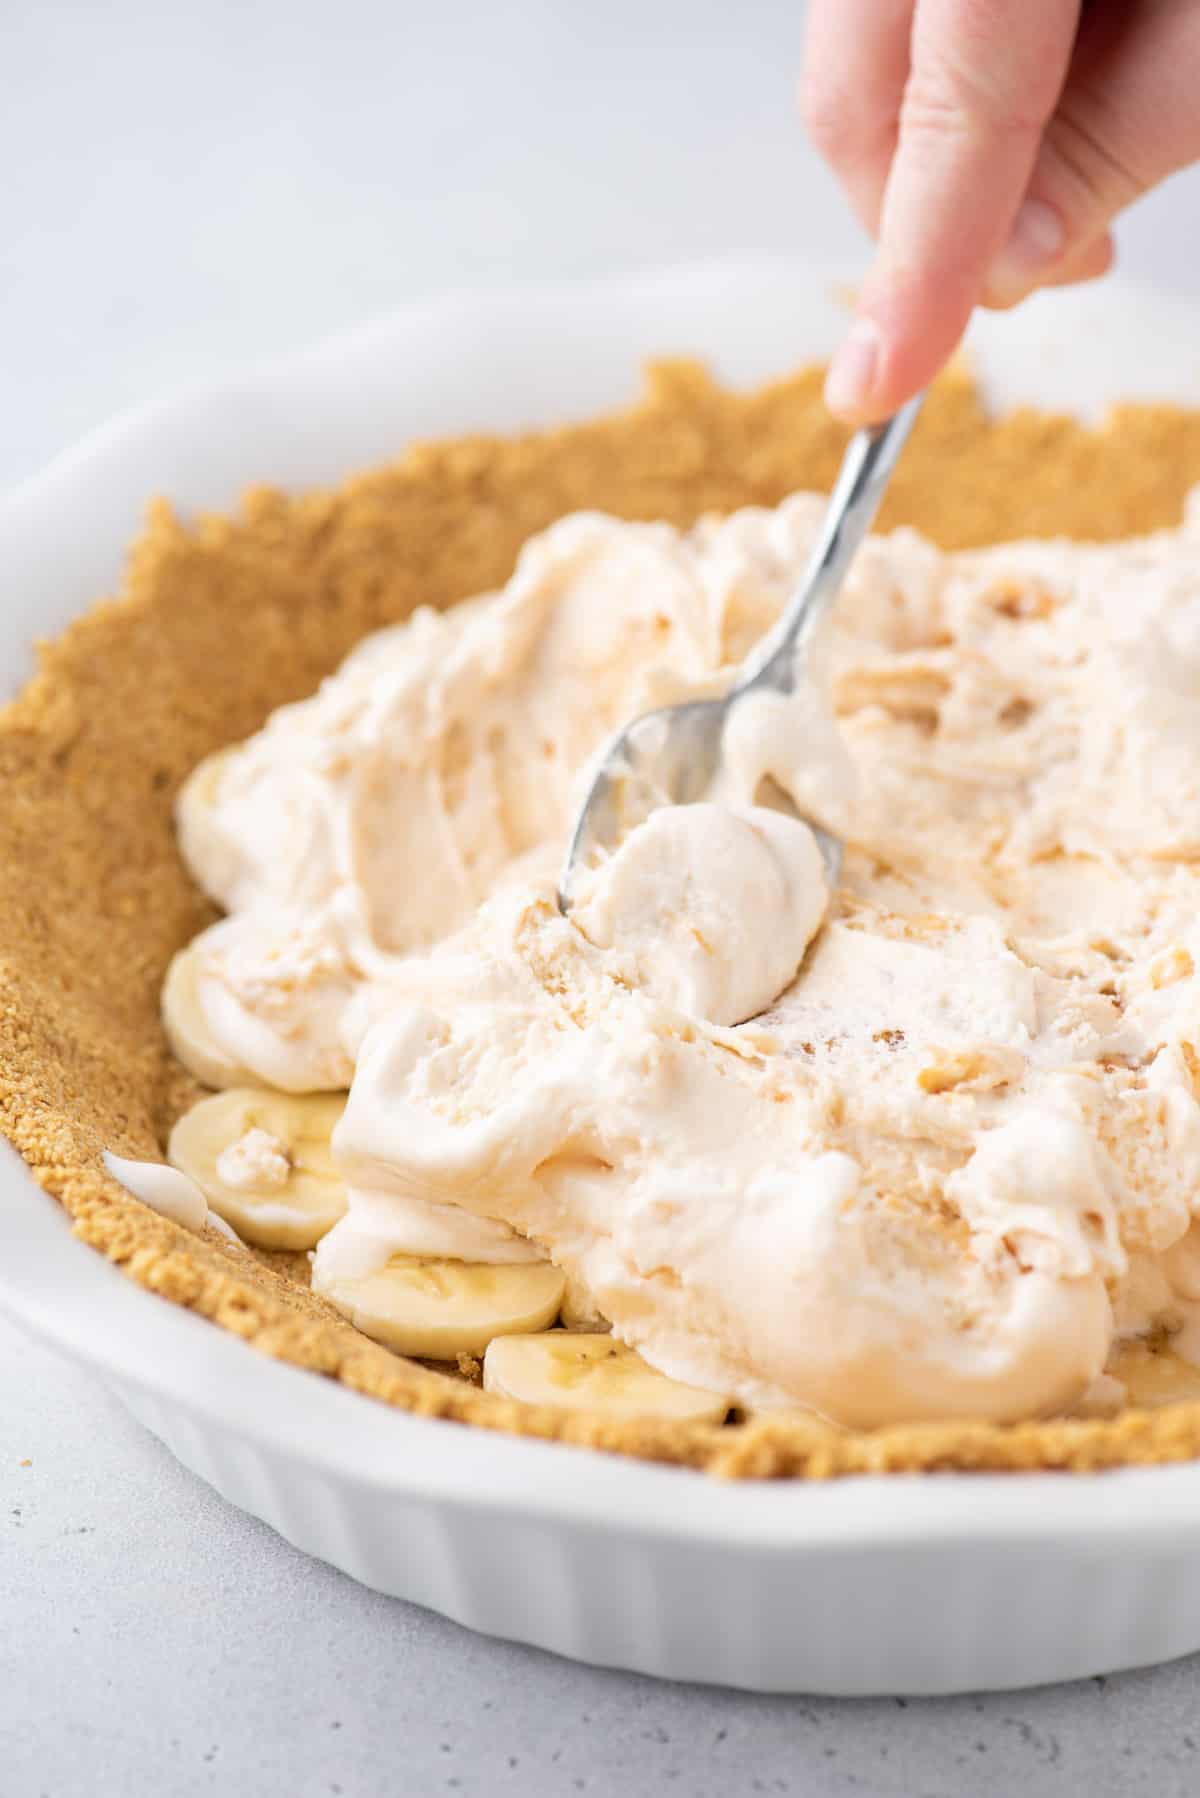 spoon spreading ice cream into pie crust